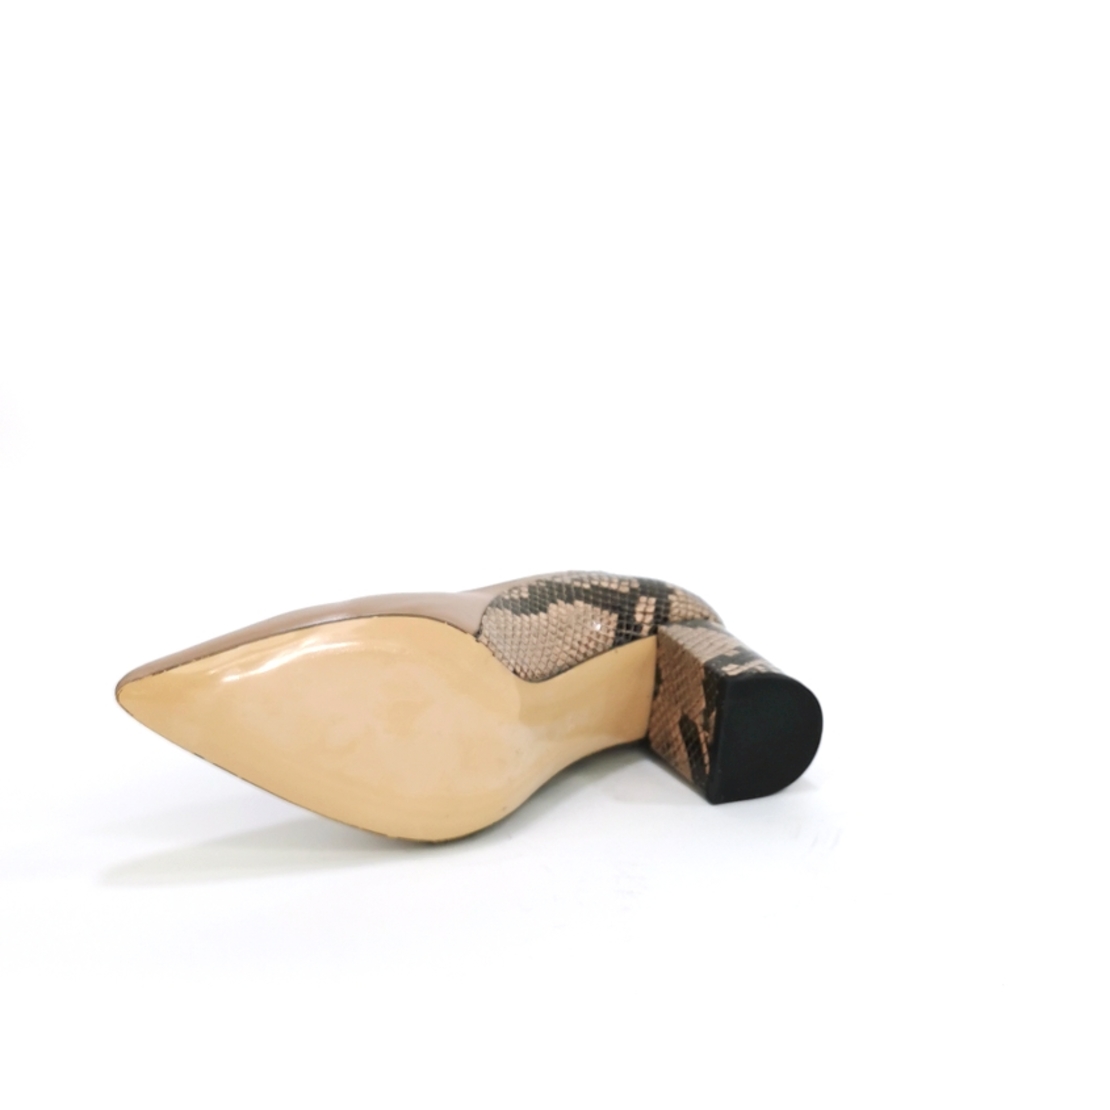  Женские элегантные туфли из натуральной кожи цвета норки/73247